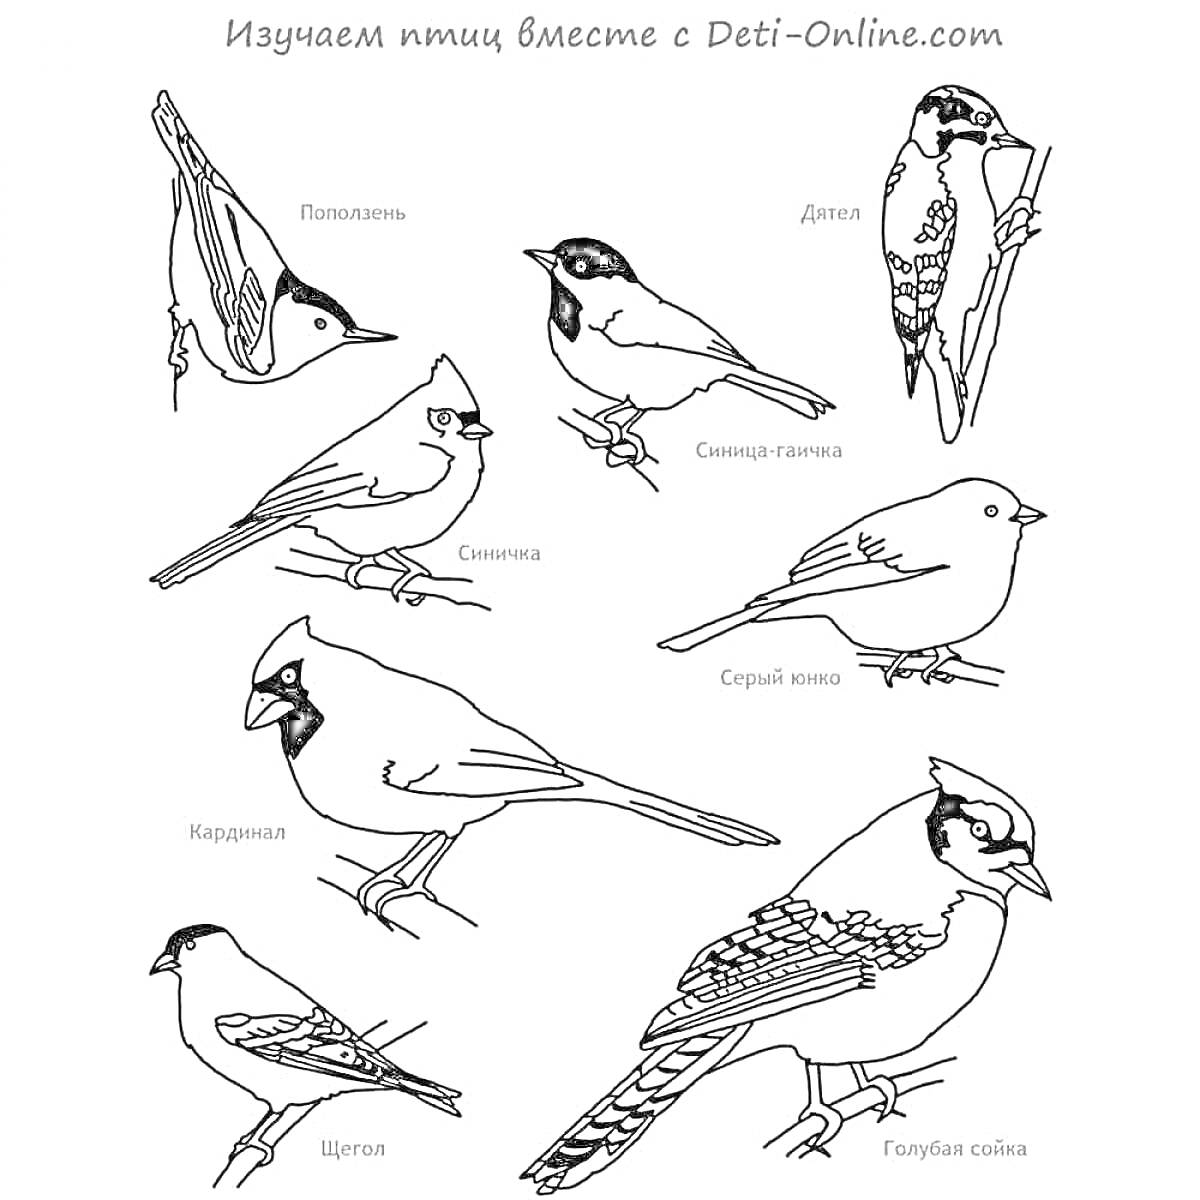 Раскраска зимующих птиц для детей 4-5 лет (поползень, дятел, синица, серый славей, кардинал, гаярдовая сойка, чечетка)